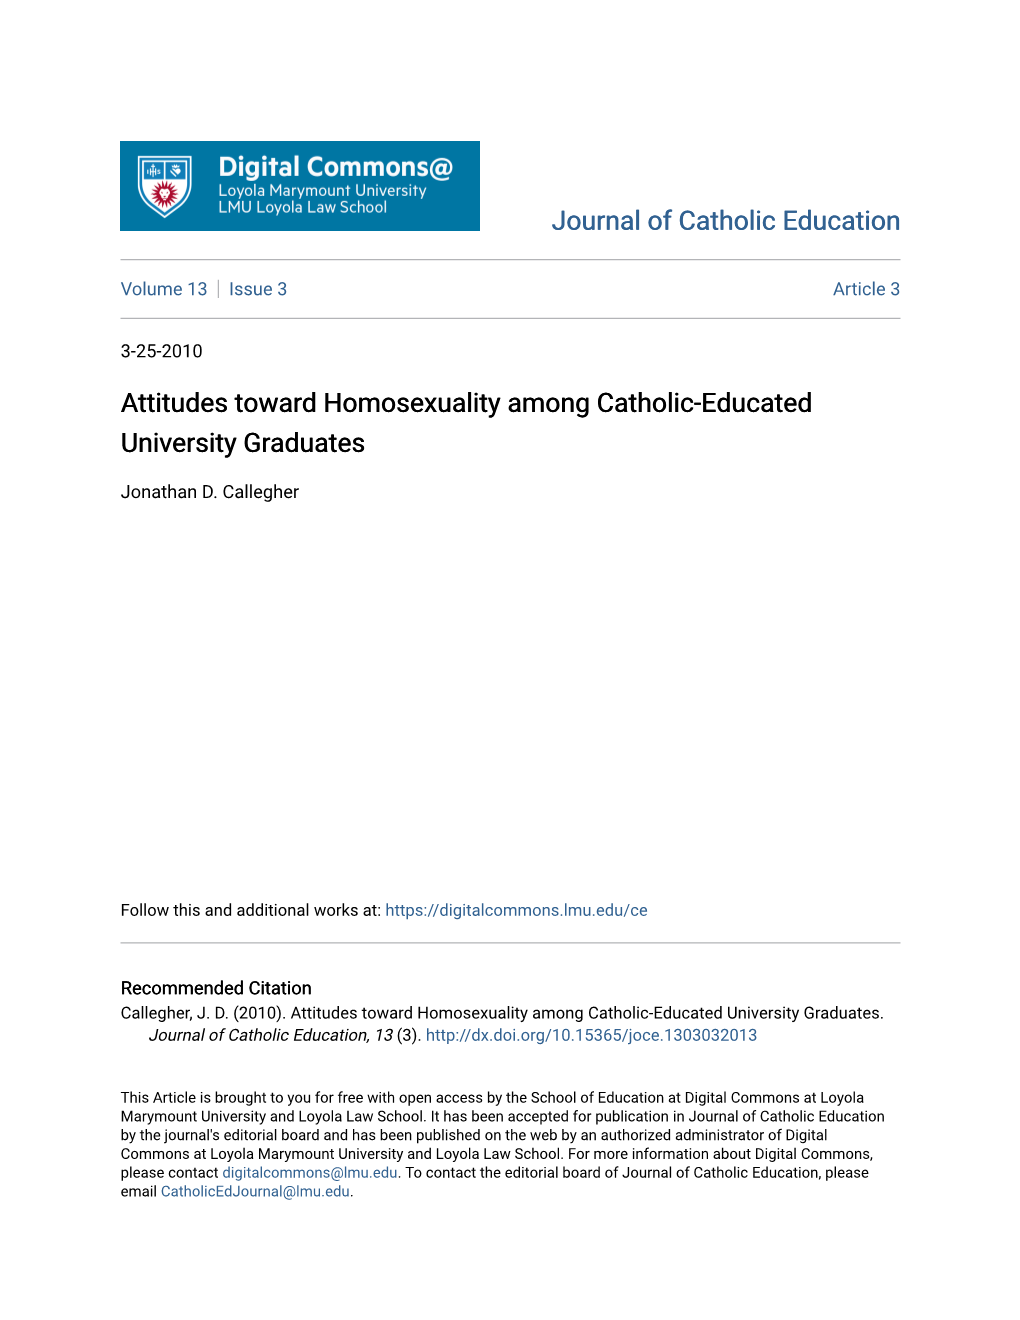 Attitudes Toward Homosexuality Among Catholic-Educated University Graduates